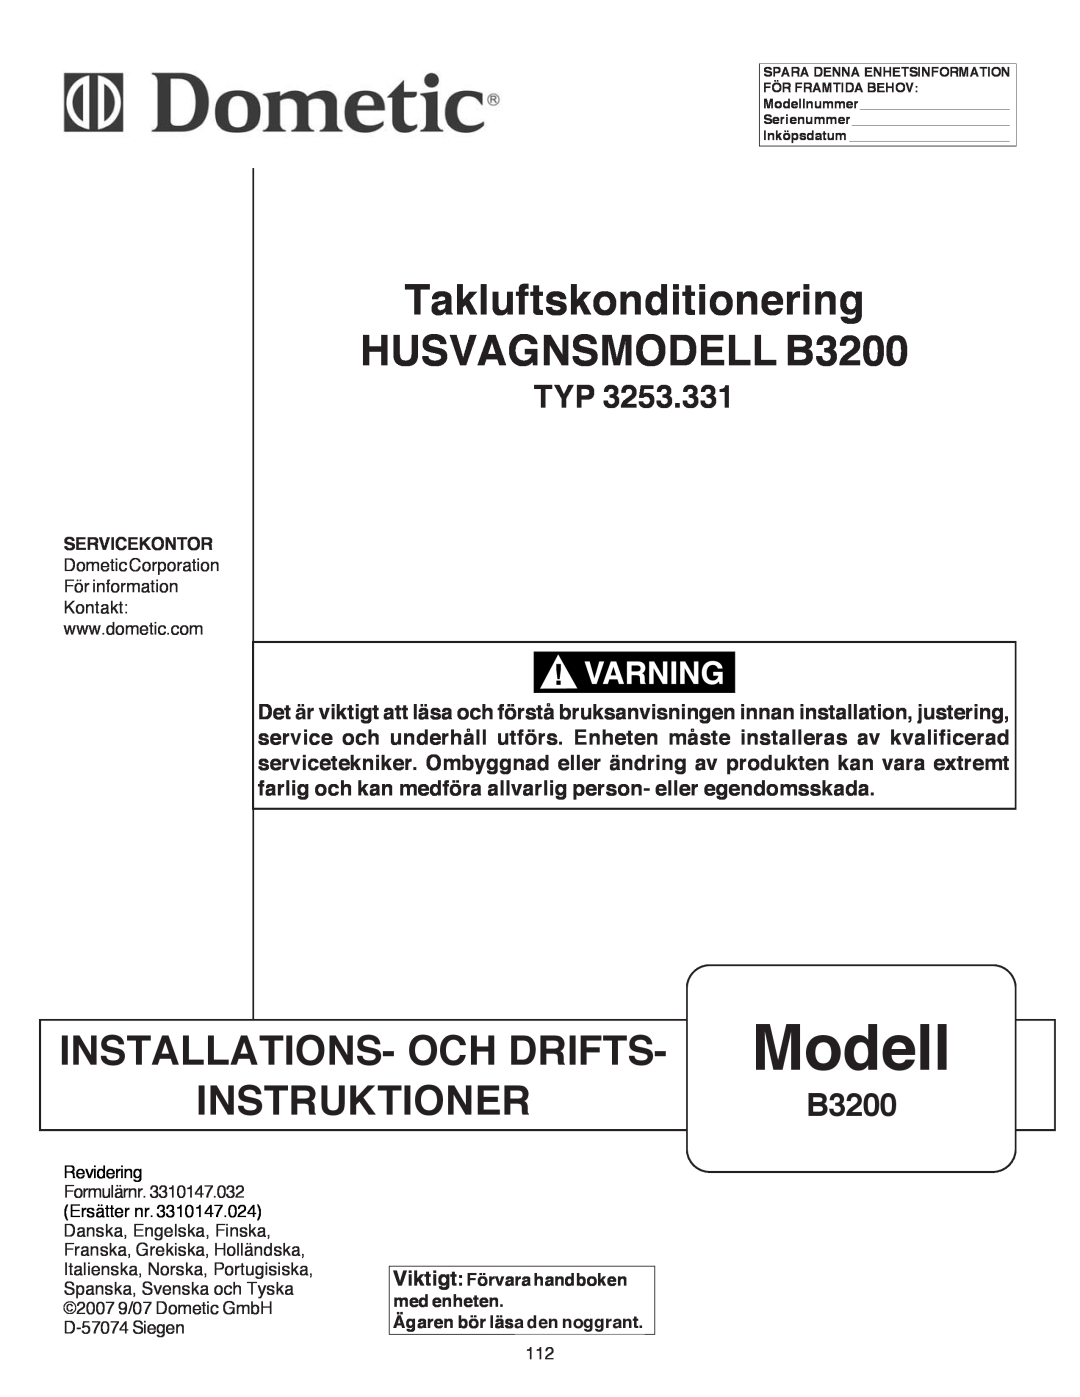 Dometic manual Modell, Takluftskonditionering HUSVAGNSMODELL B3200, Installations- Och Drifts, Instruktioner 